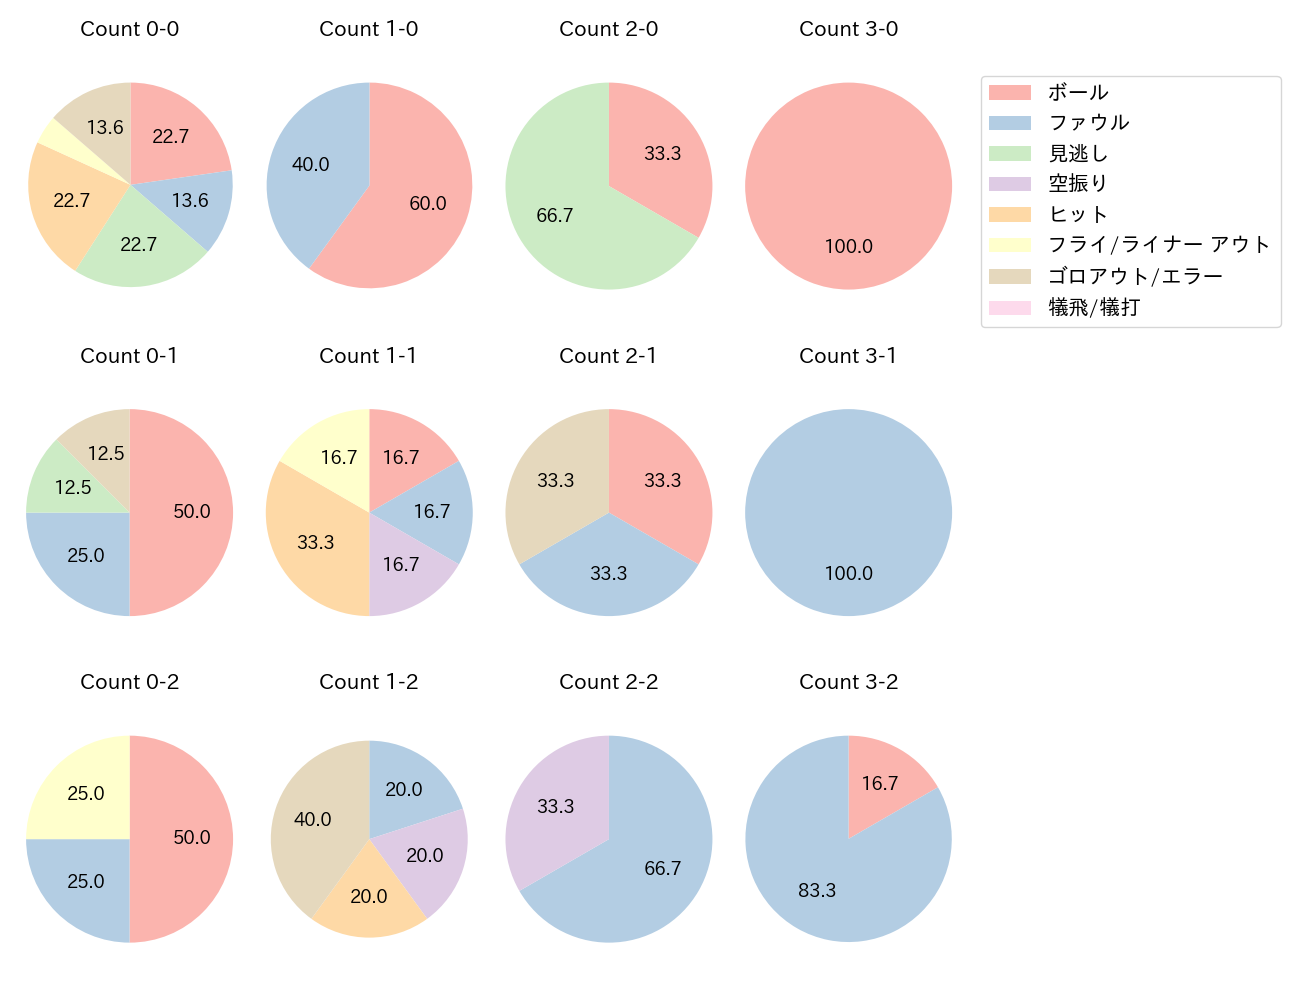 渡邊 佳明の球数分布(2021年9月)